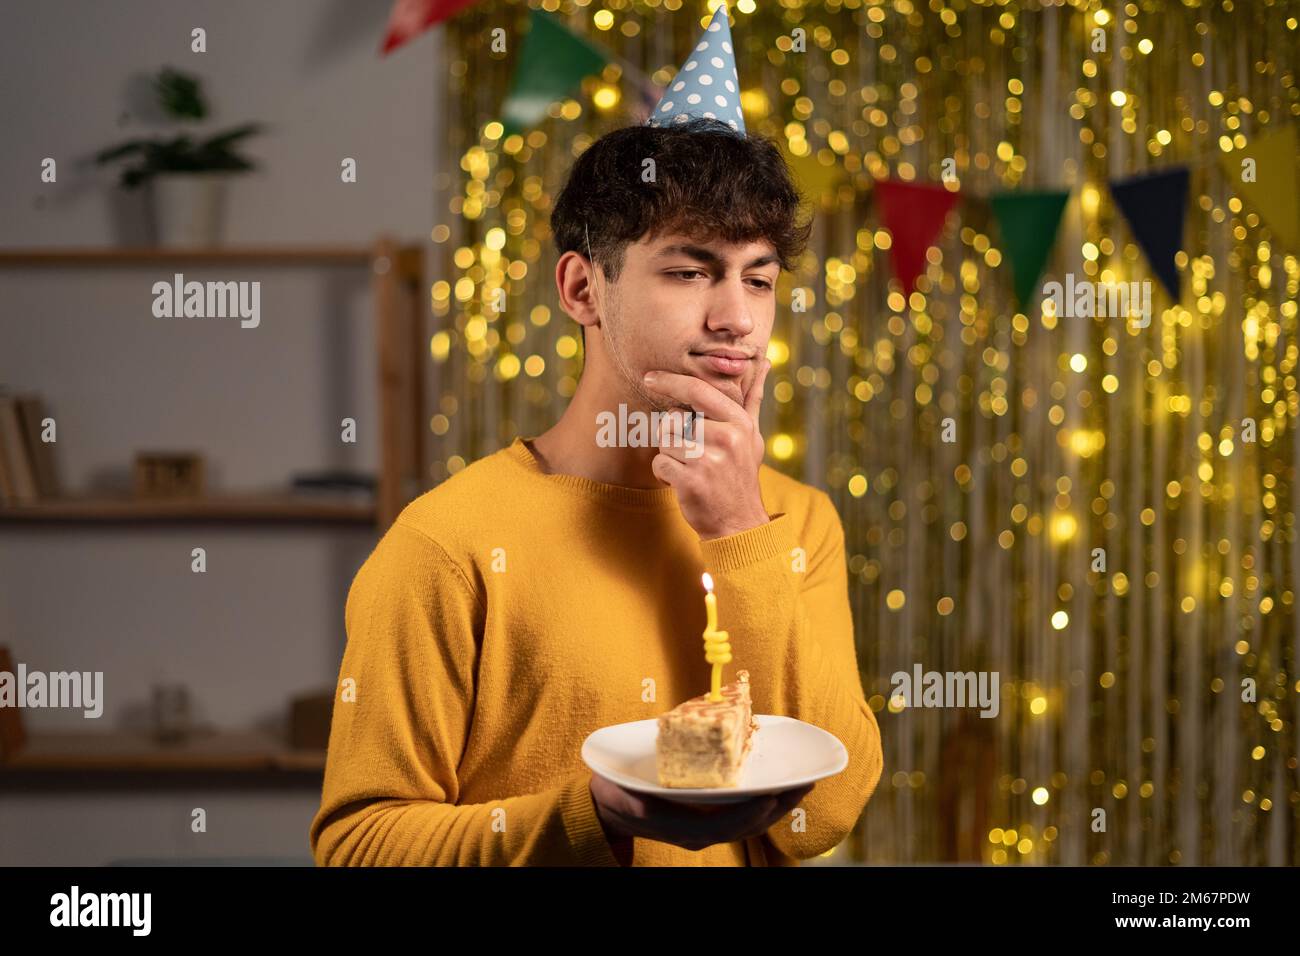 Jeune homme attentionné célébrant son anniversaire tenant un morceau de gâteau touchant son menton et pensant. Célébration et vacances Banque D'Images